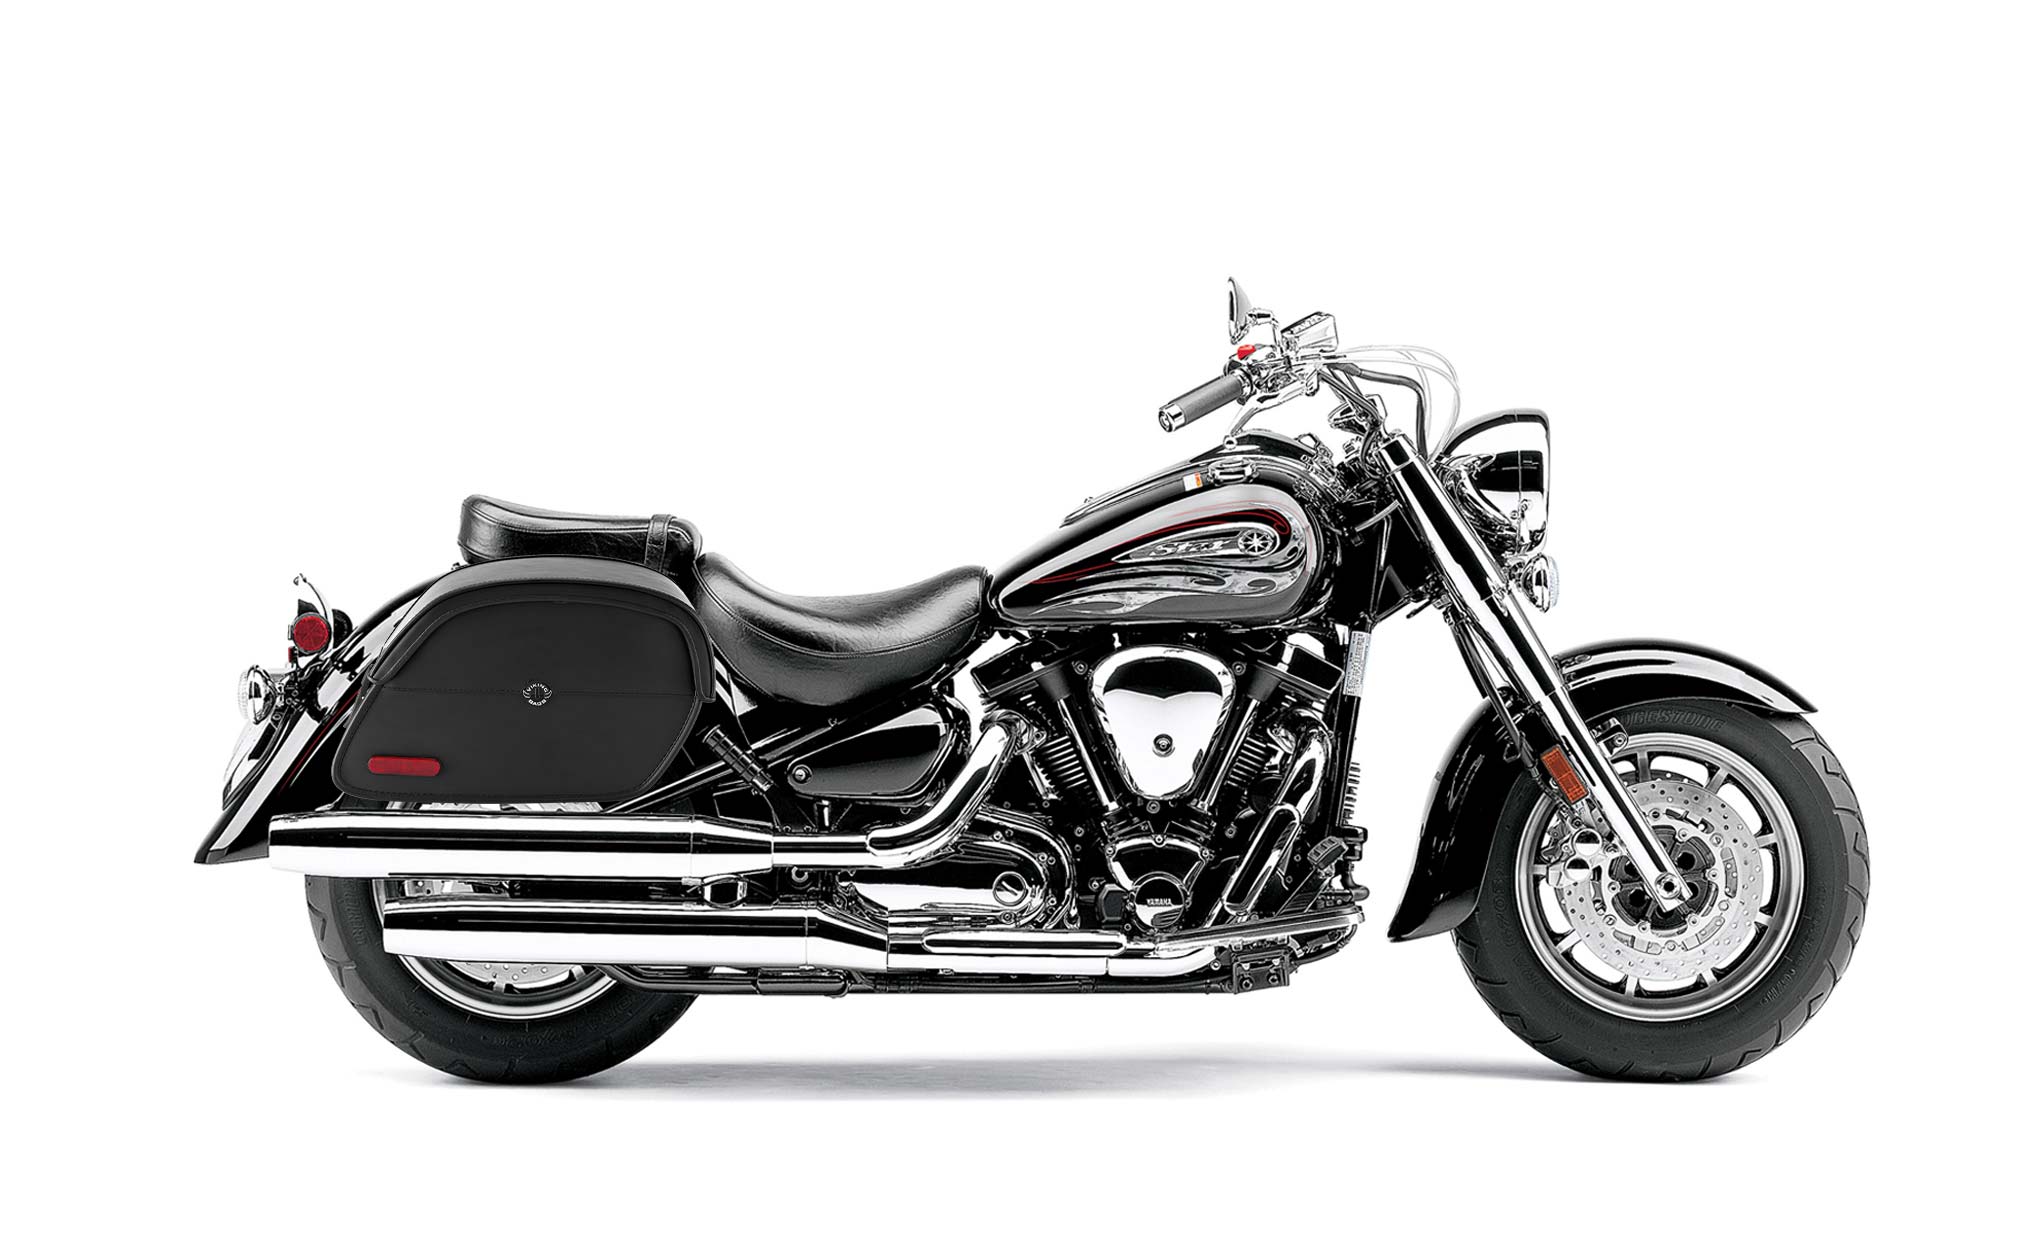 Viking California Large Yamaha Road Star S Midnight Leather Motorcycle Saddlebags on Bike Photo @expand